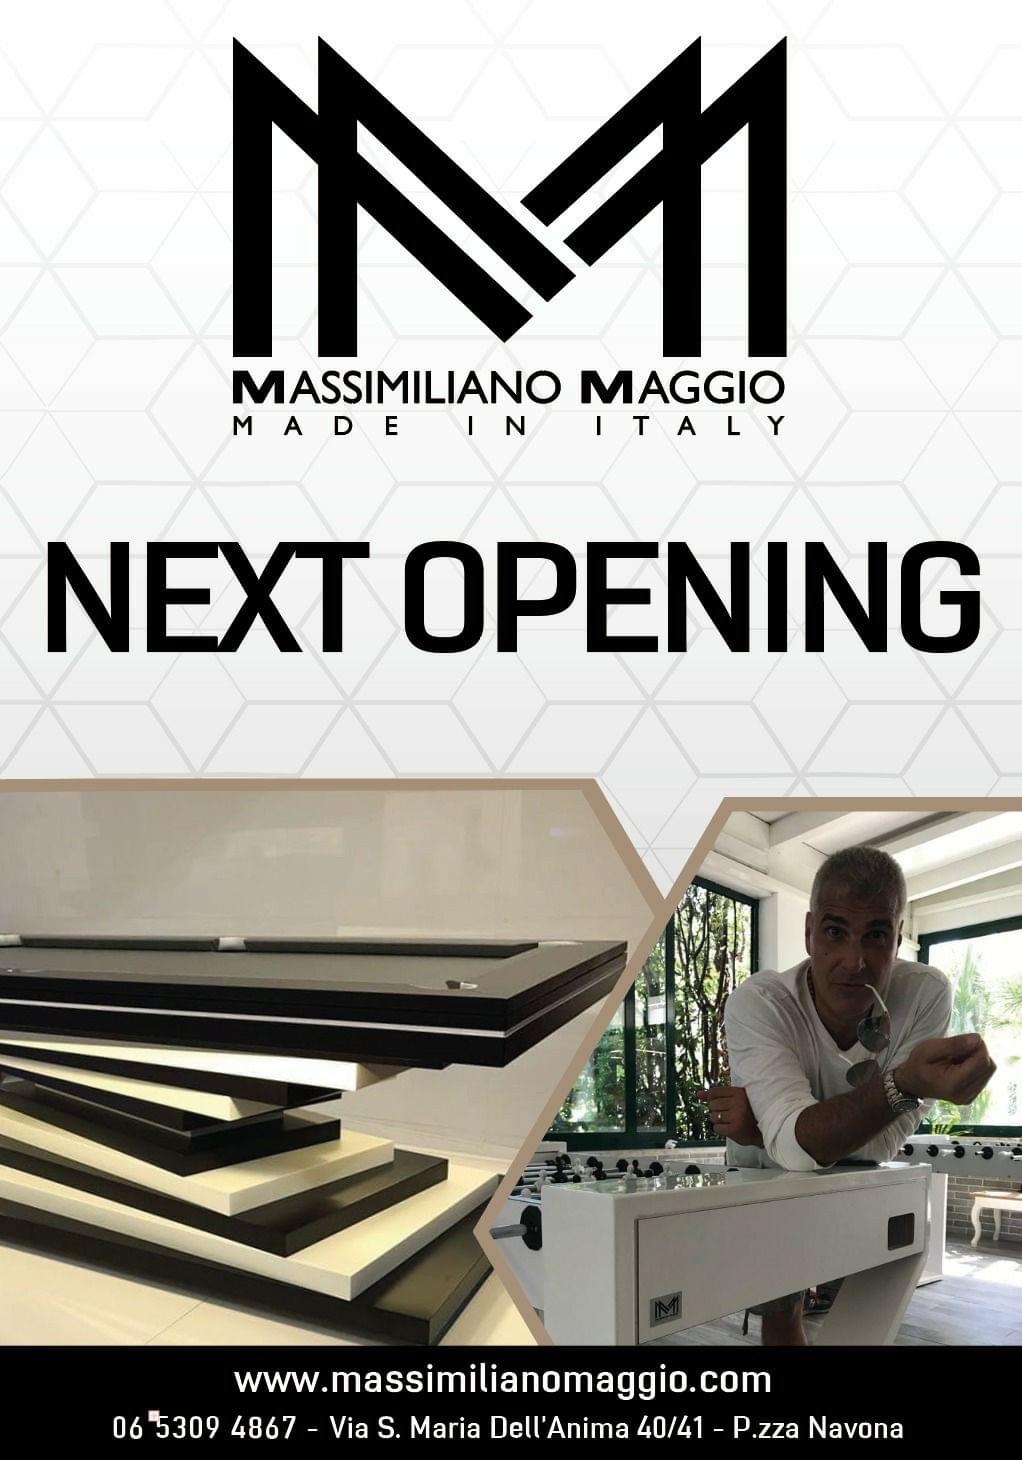 1 New Opening Massimiliano Maggio Piazza Navona Roma 2018